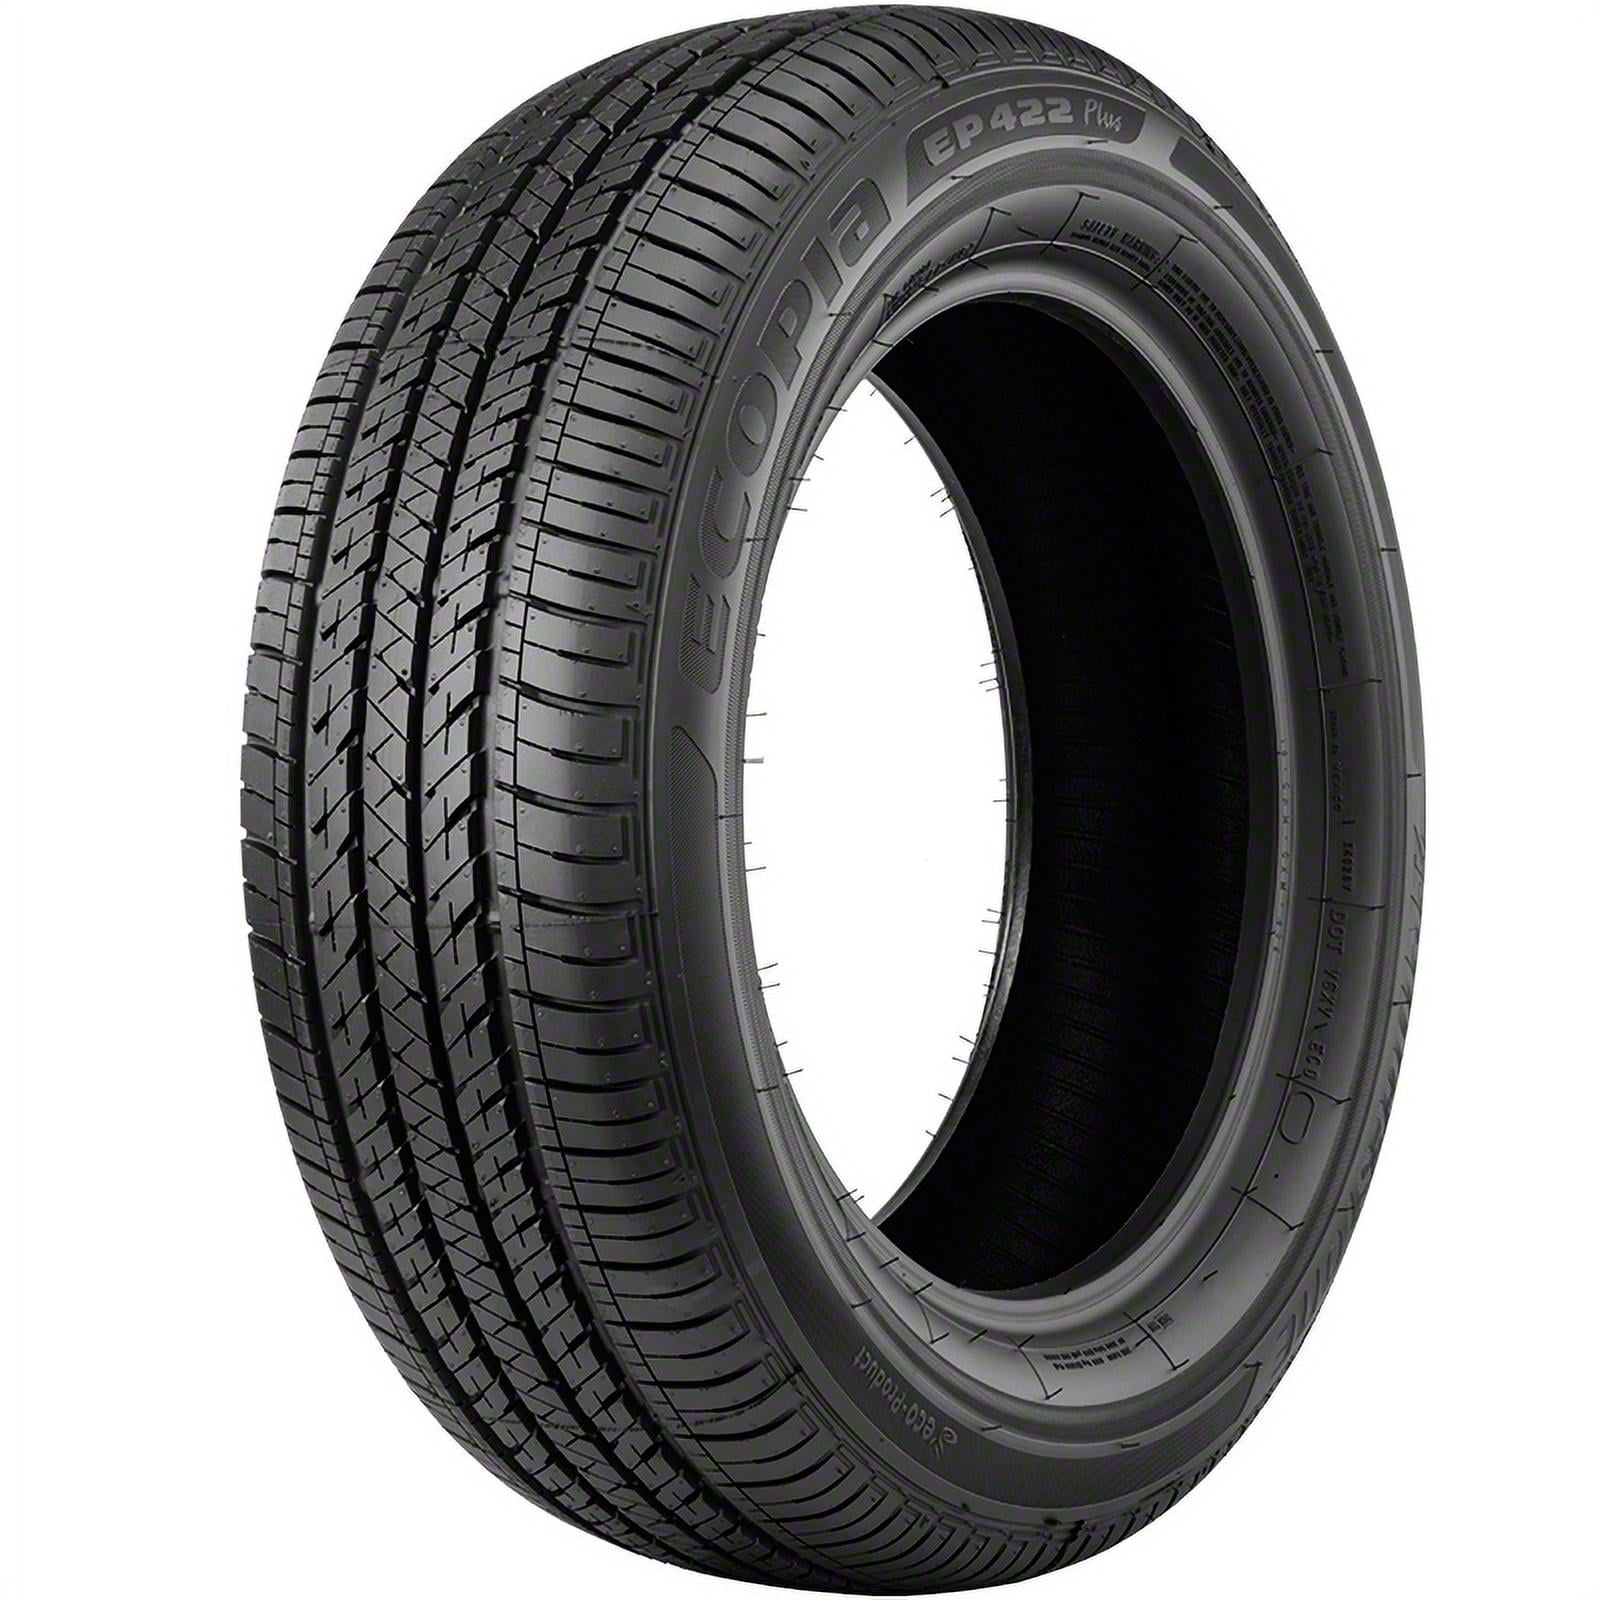 205/60R16 92H Bridgestone Ecopia EP422 Plus A/S All Season Tire